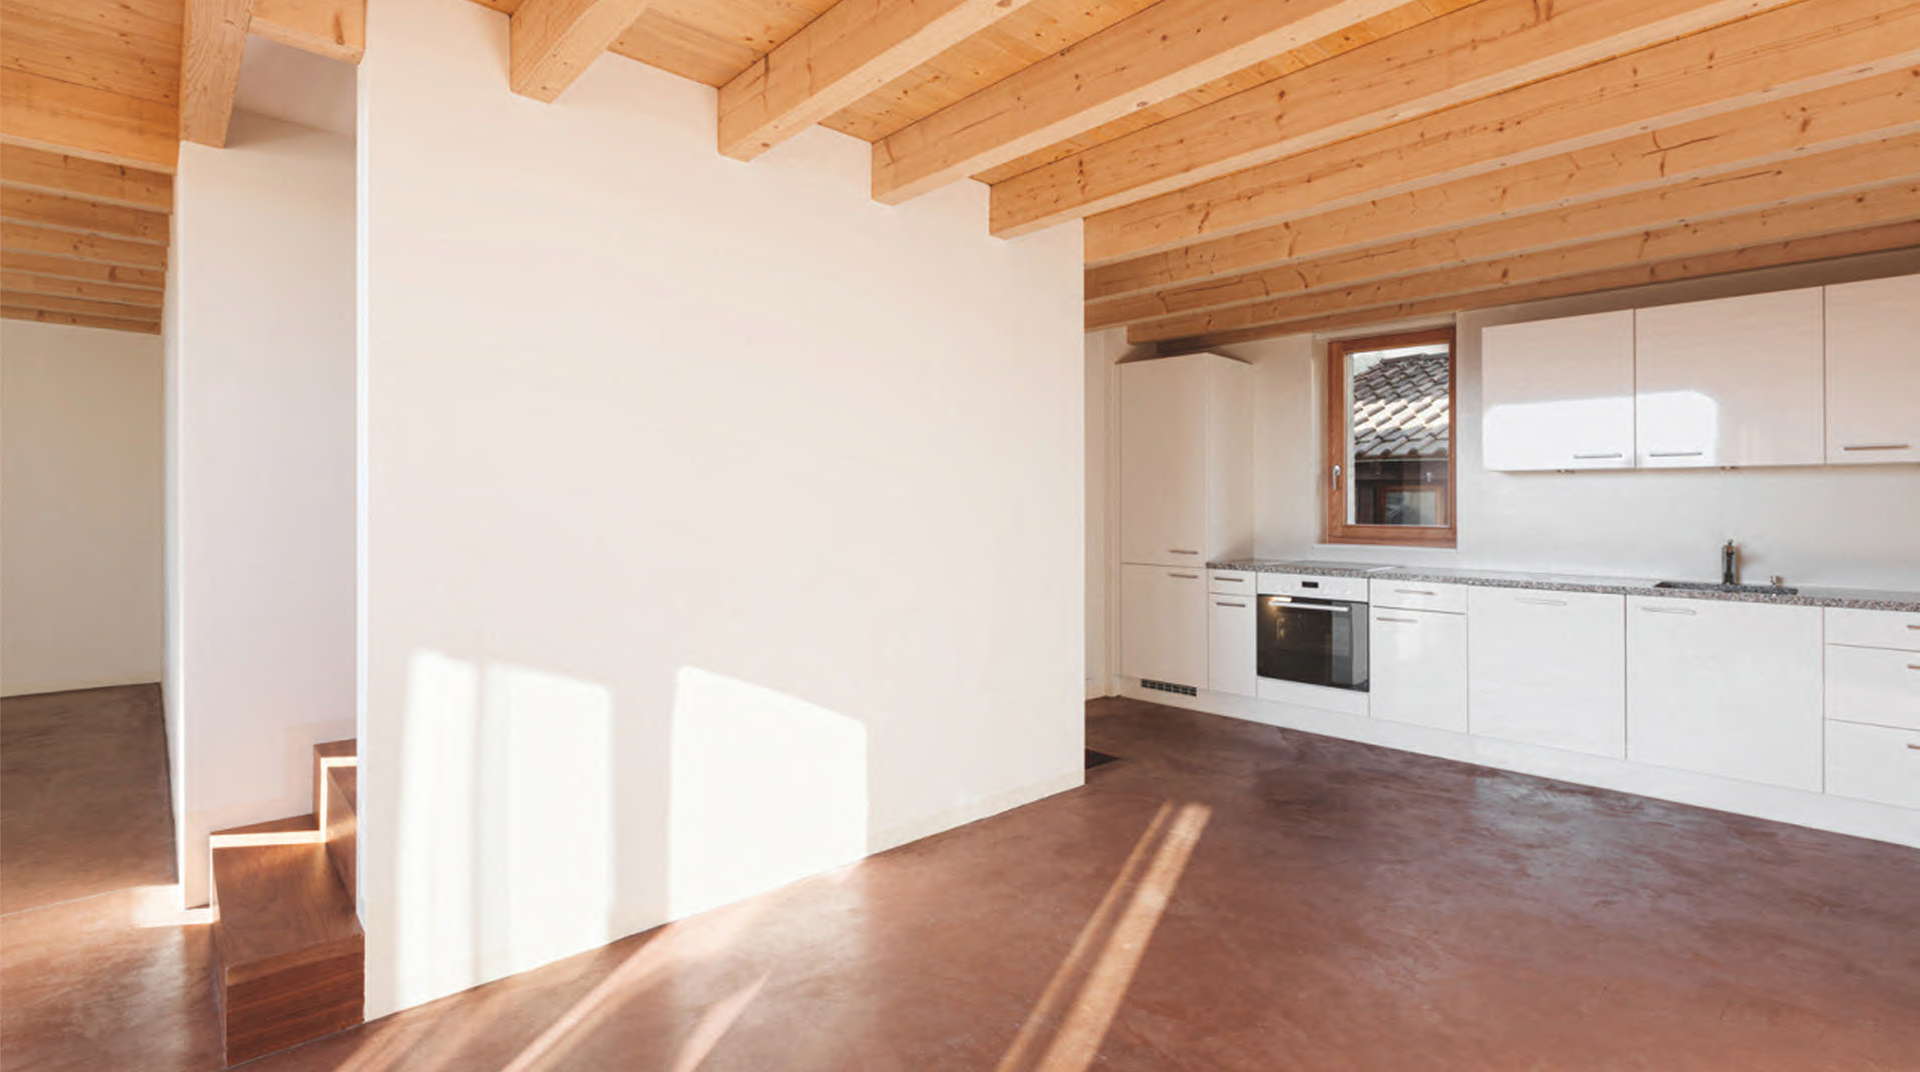 Eine helle Loft von innen mit Ansicht auf Küche und Treppe